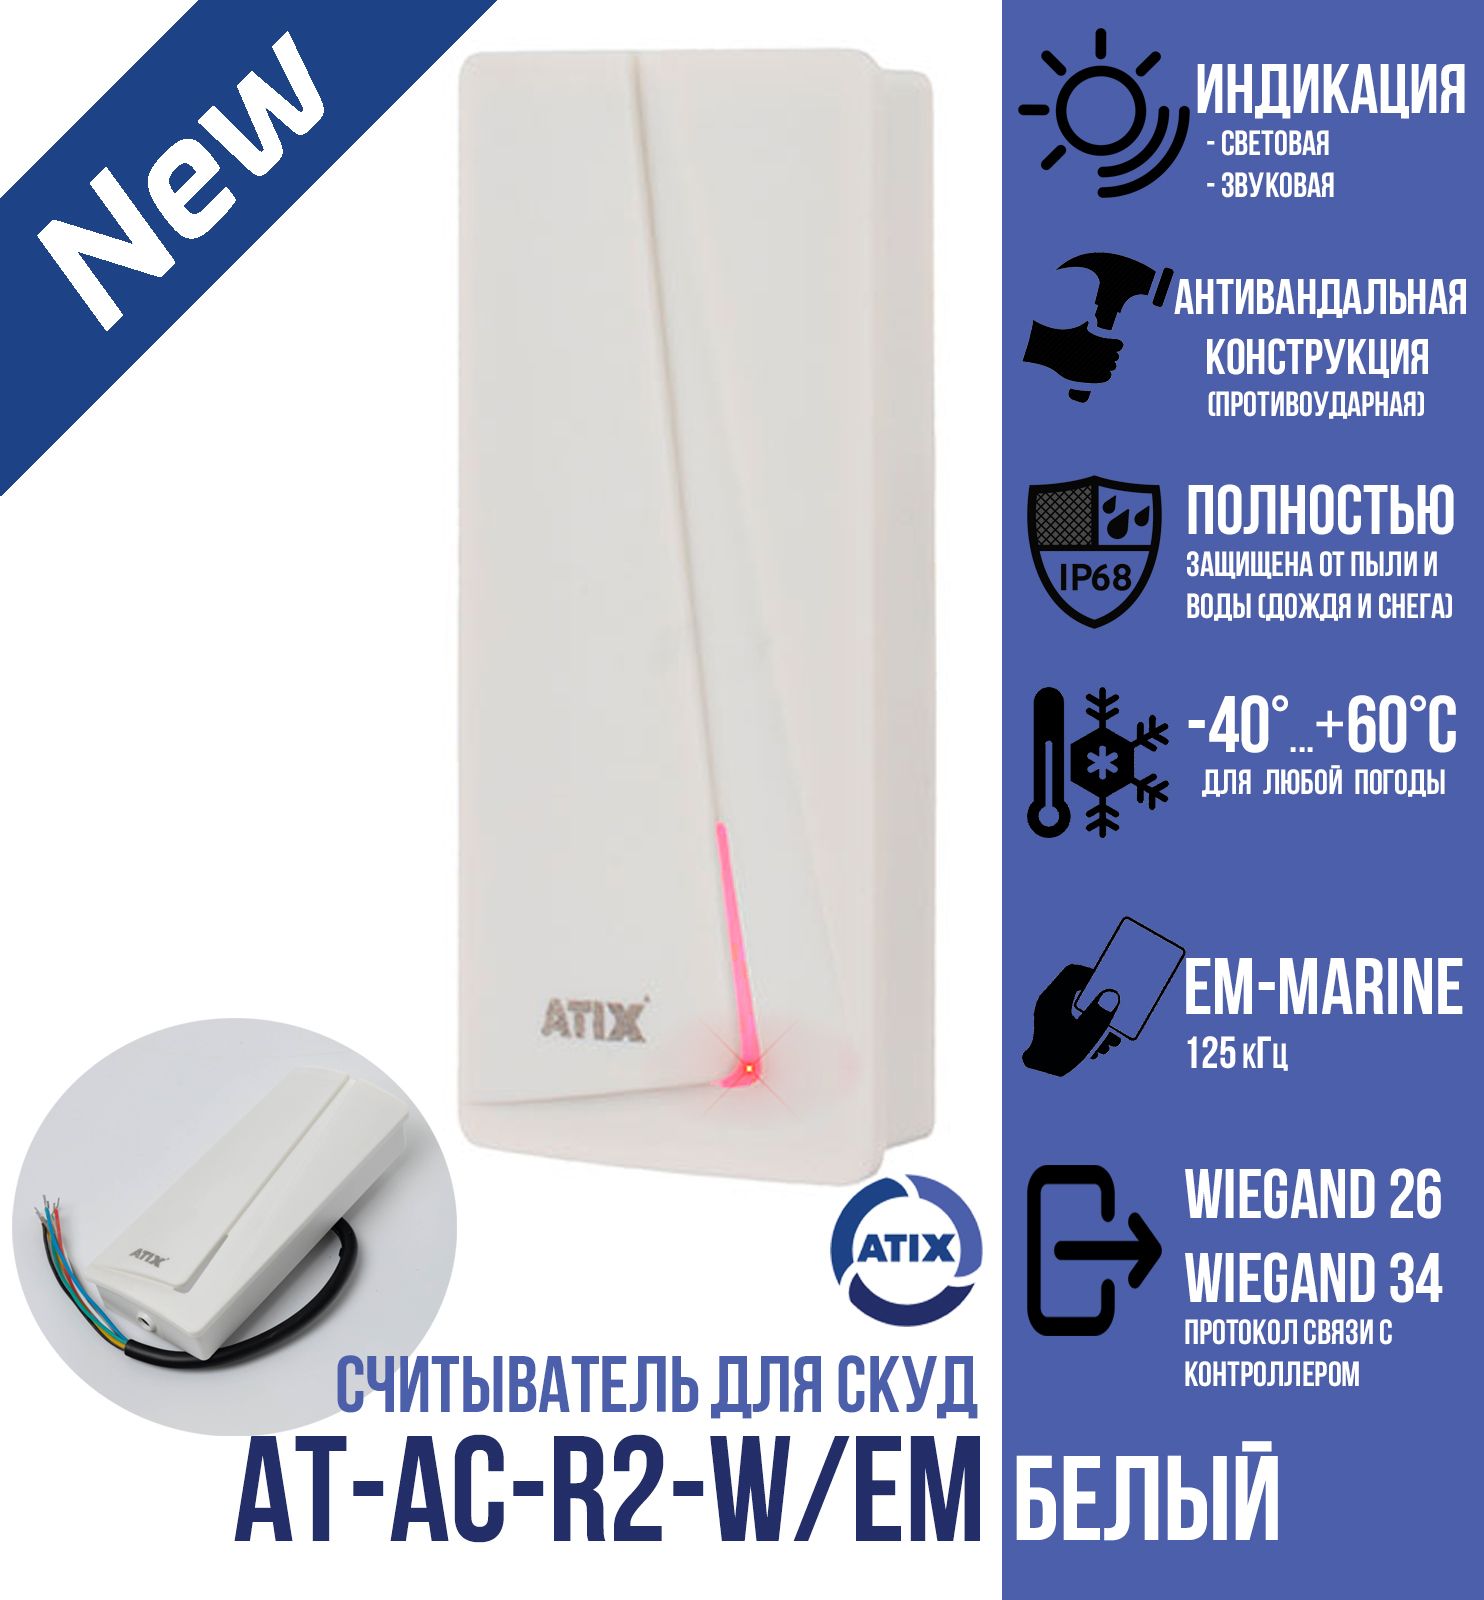 Считыватель СКУД ATIX для карт и брелоков EM-Marine, AT-AC-R2-W/EM, белый, 125кГц, IP 68 считыватель em marine карт hikvision